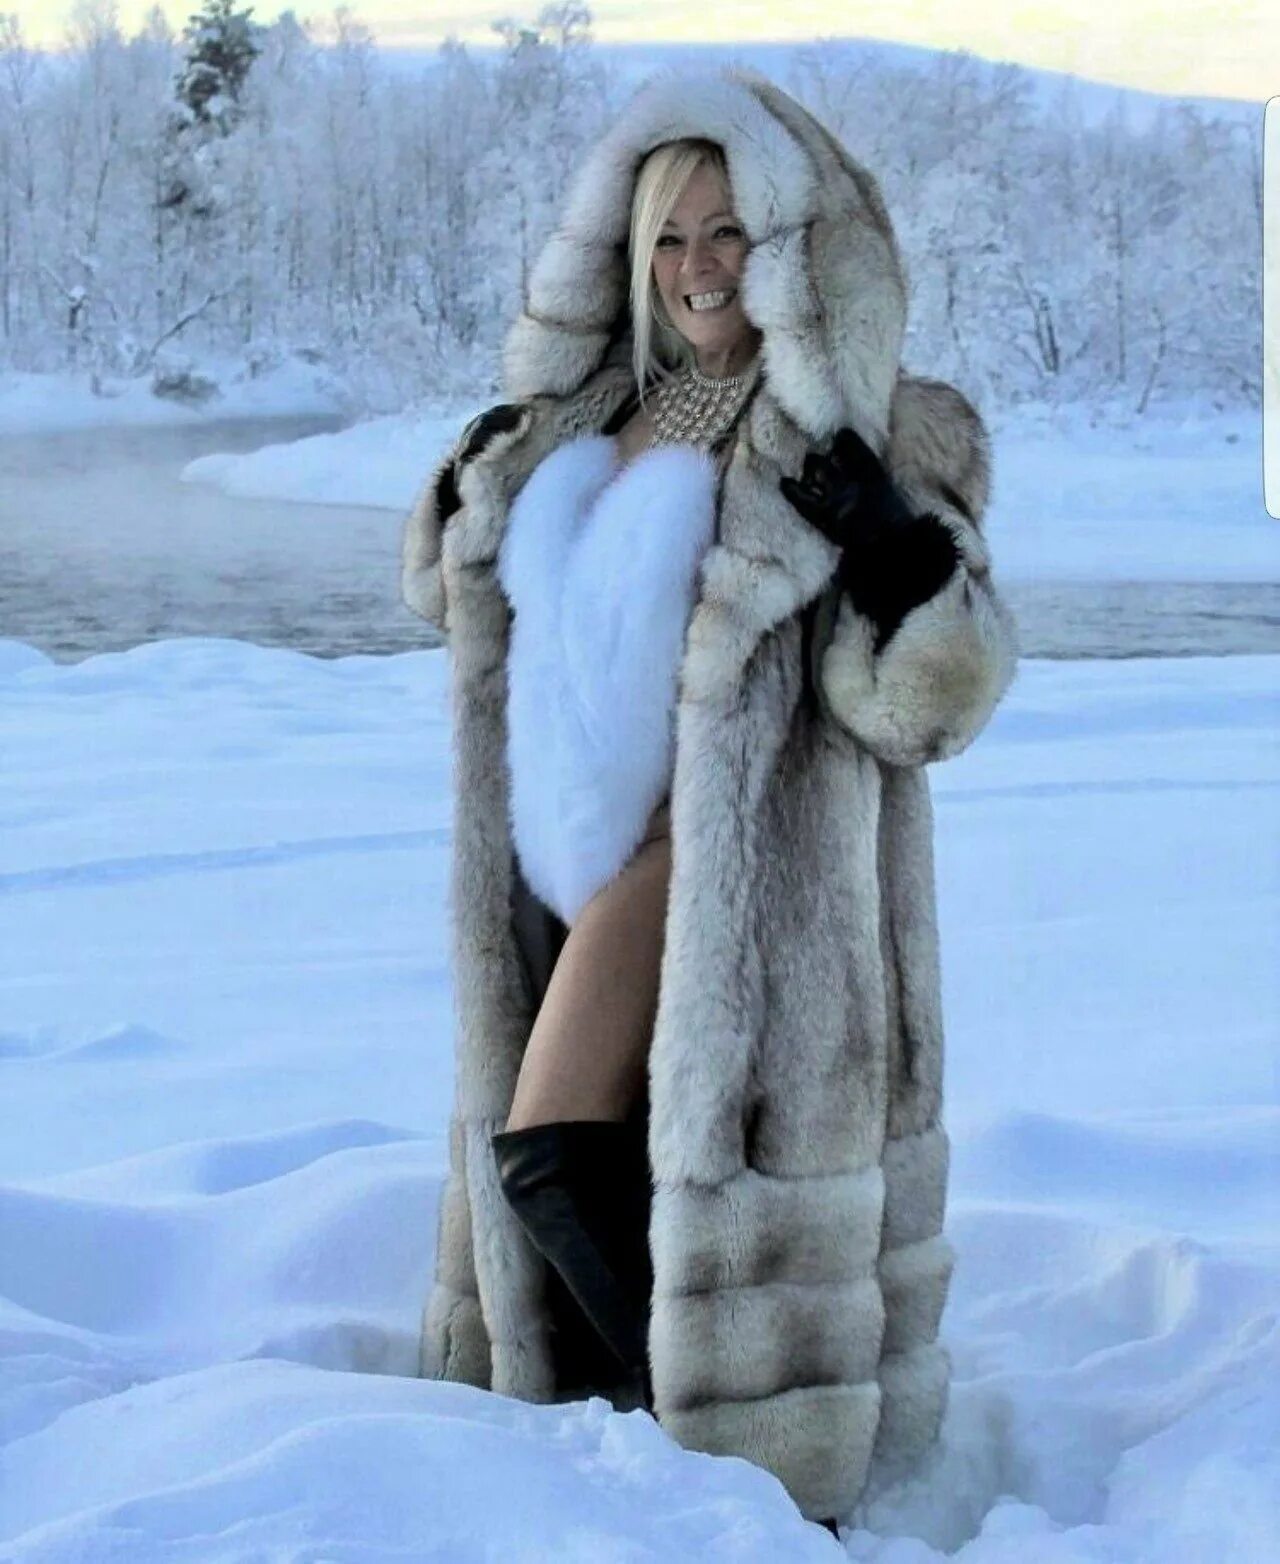 Самой толстой снежной шубой накрывал. Алена Шишкова в шубе. Девушка в шубе. Фотосессия в шубе.